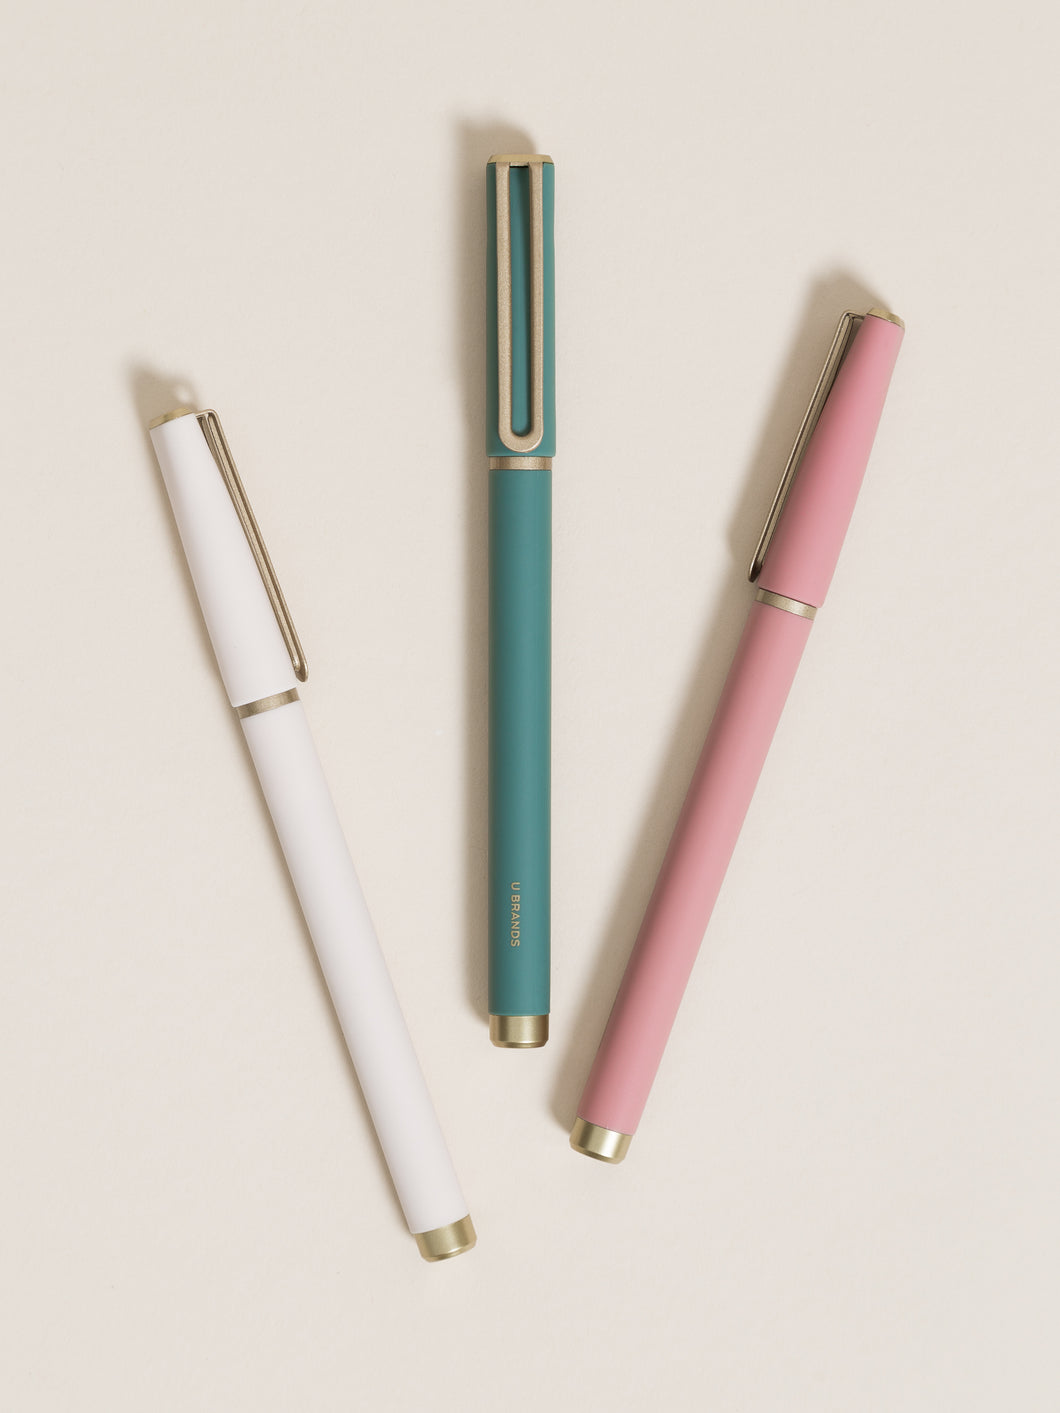 Felt-tip pens and fineliner